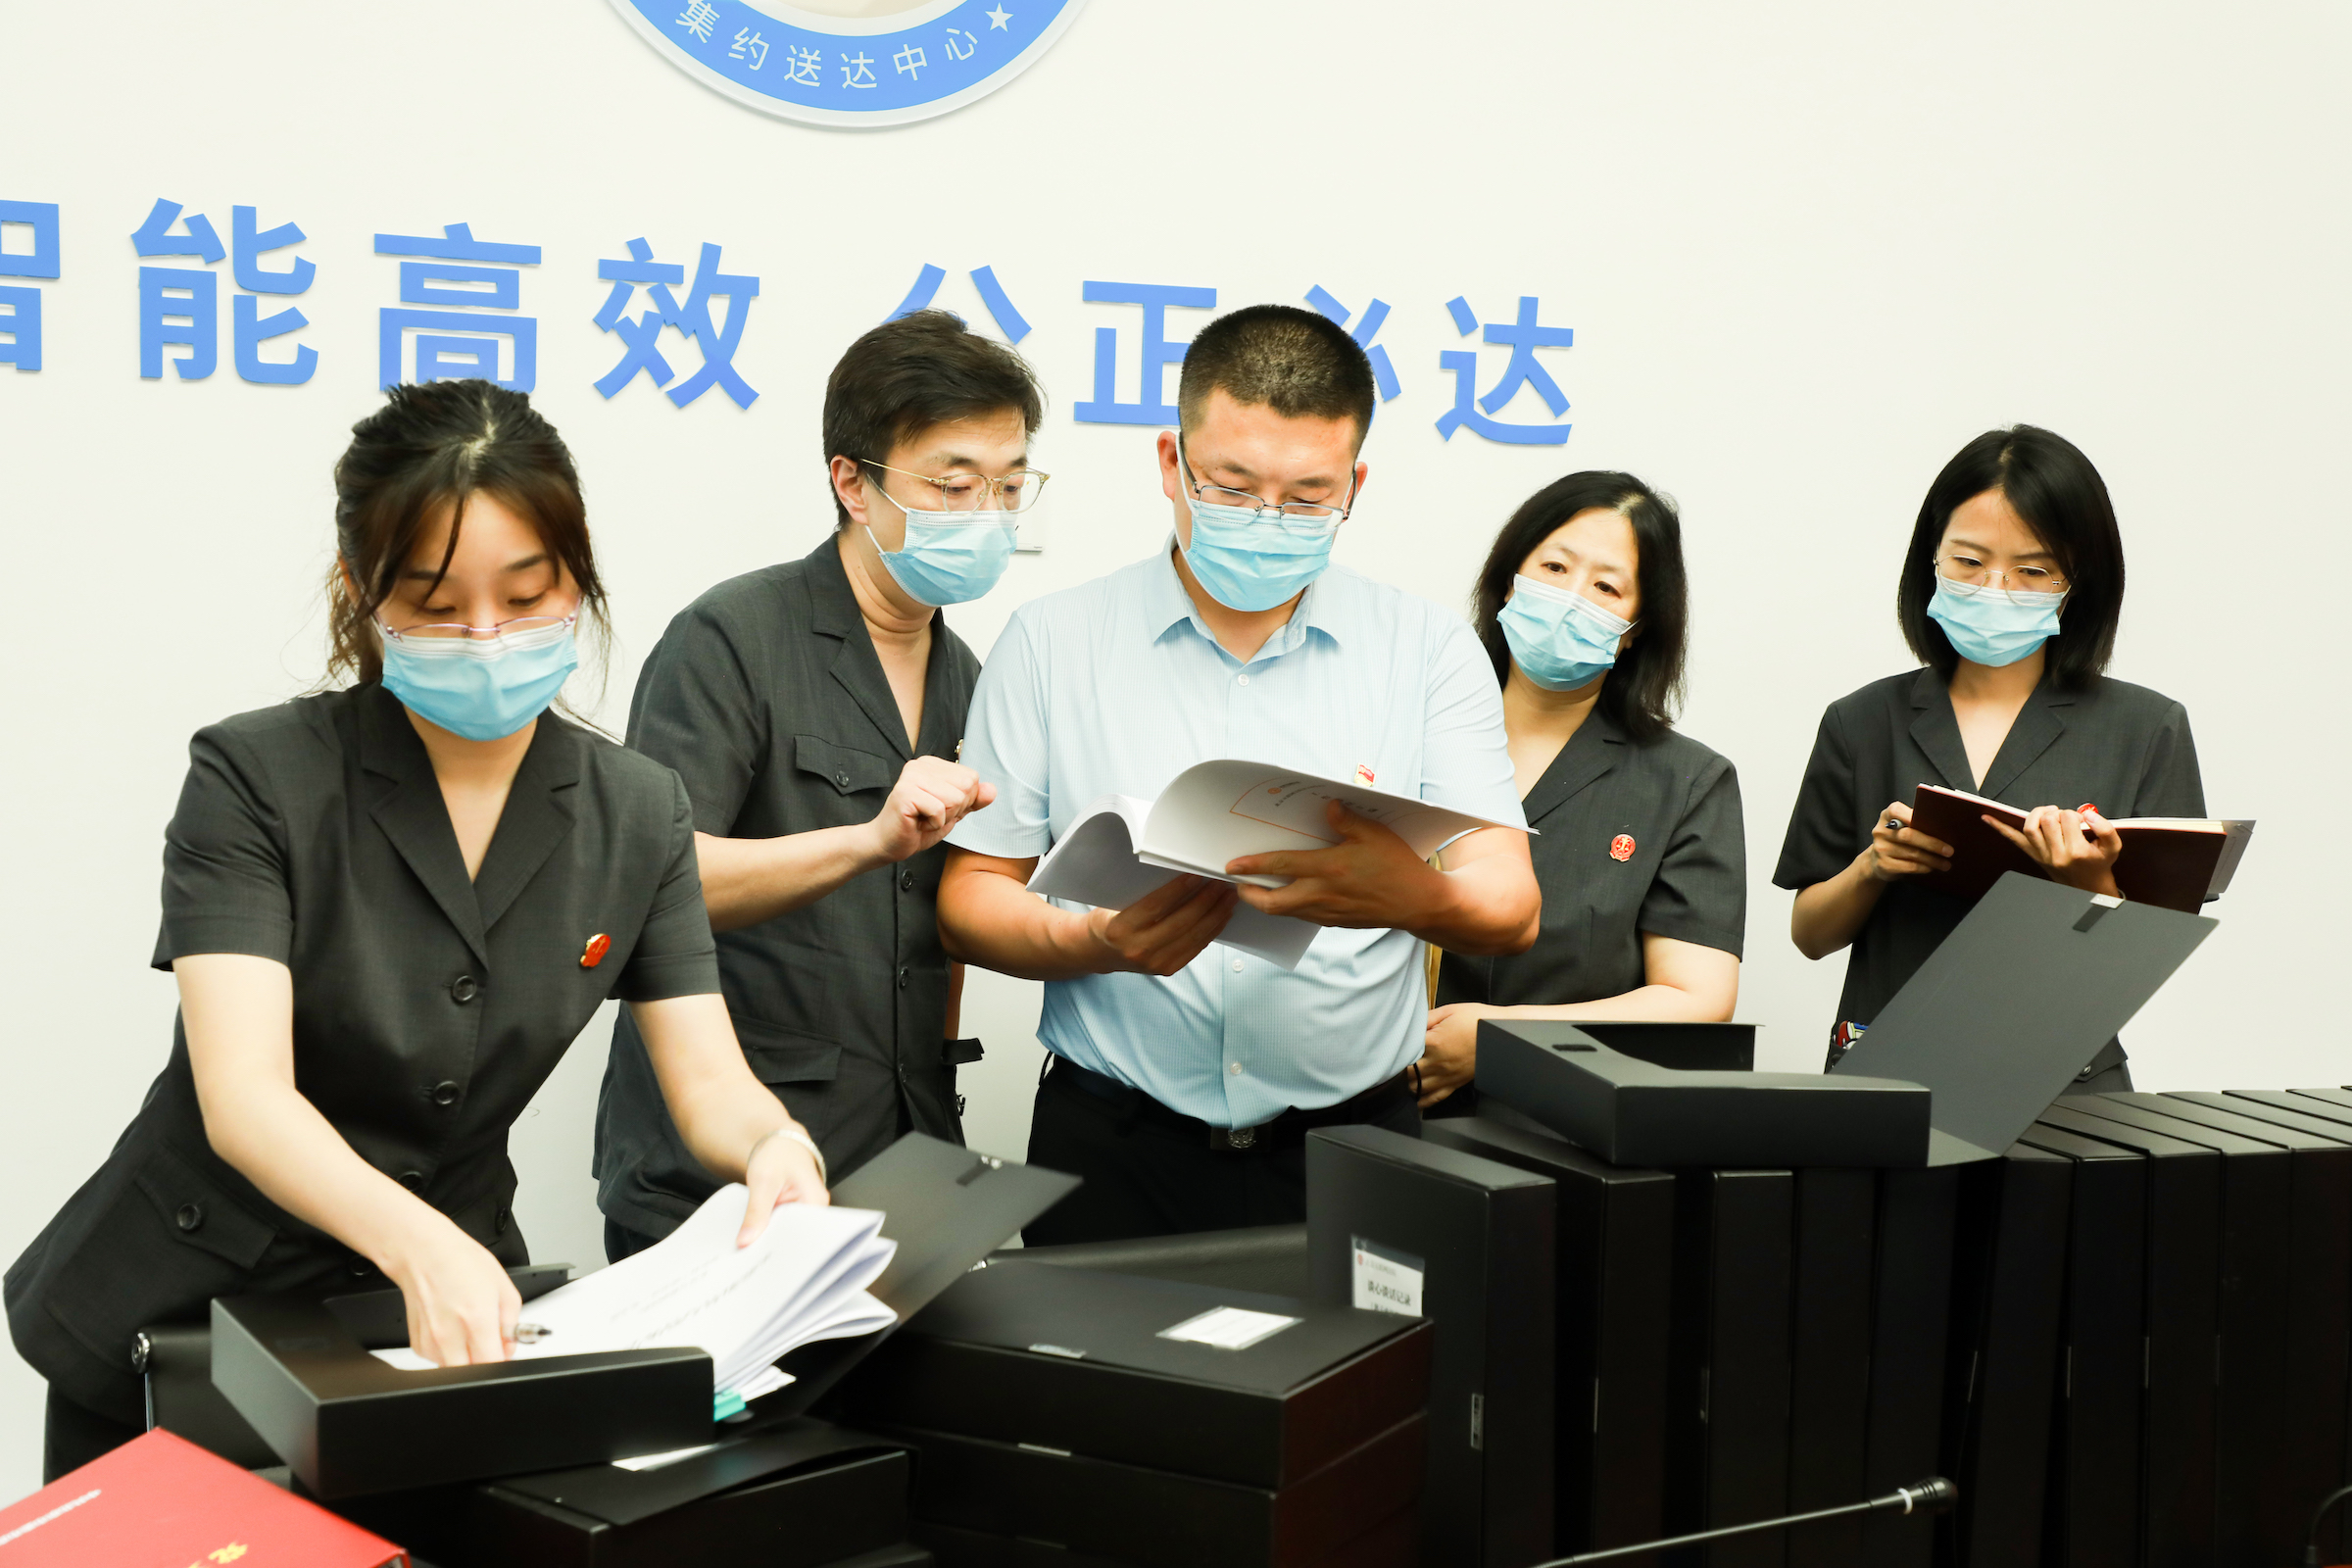 中央第一督导组北京小组到北京金融法院实地督导队伍教育整顿工作